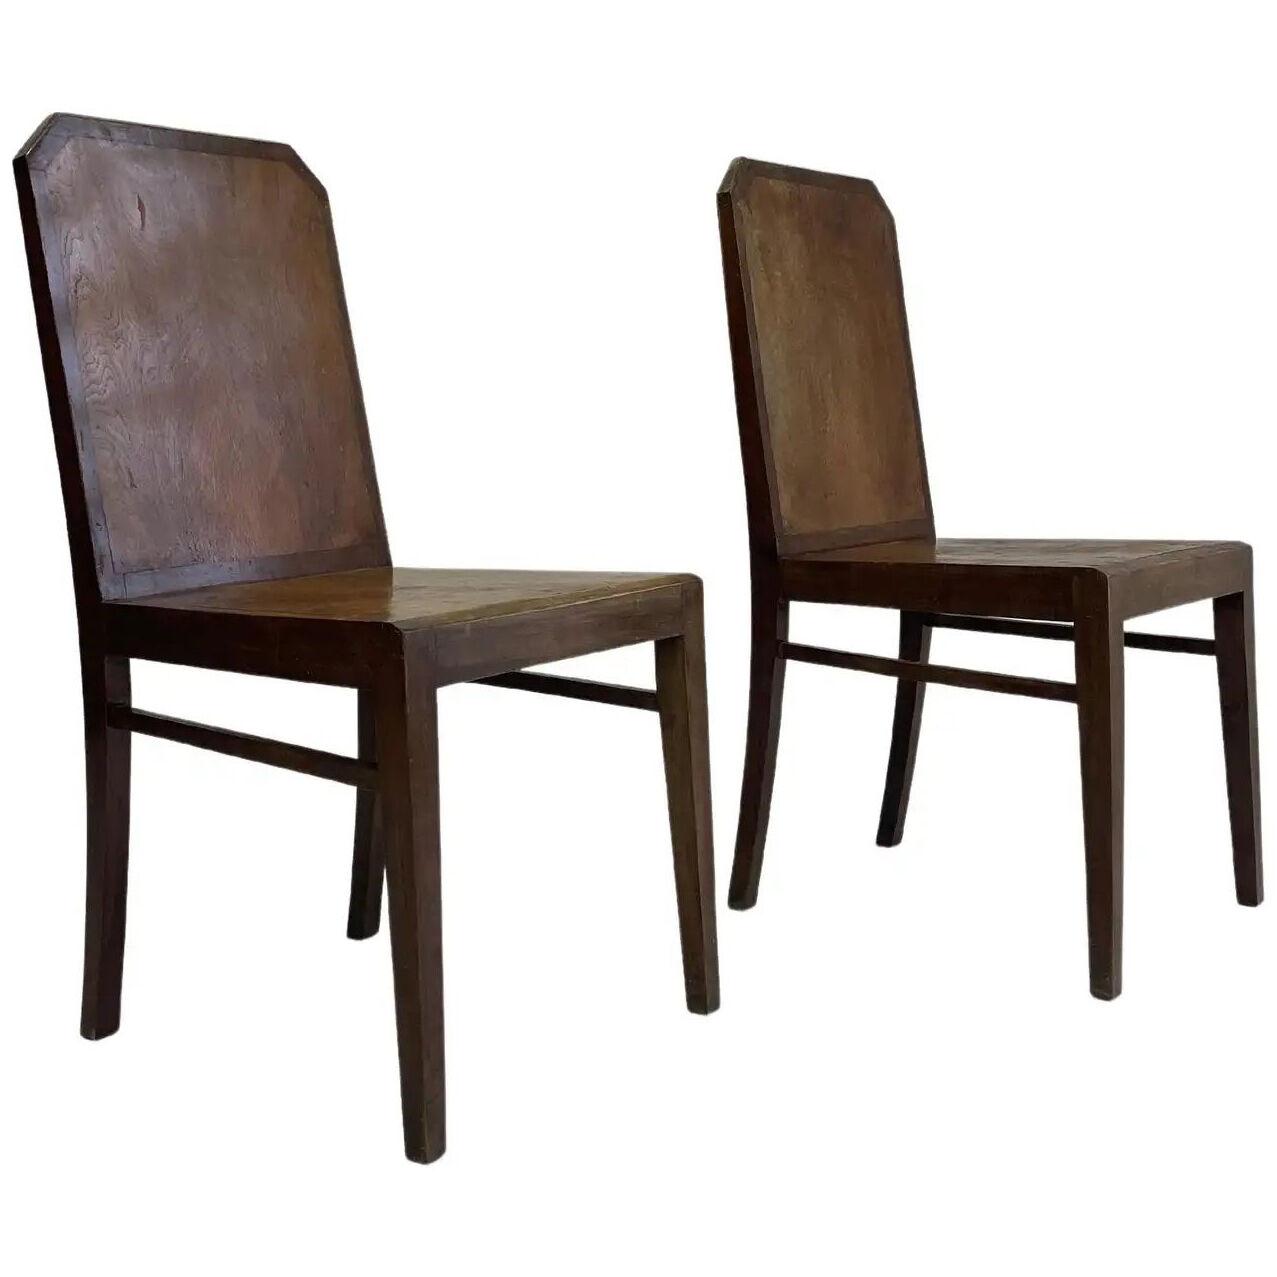 1930s Set of 2 Chairs by Rudolf Steiner